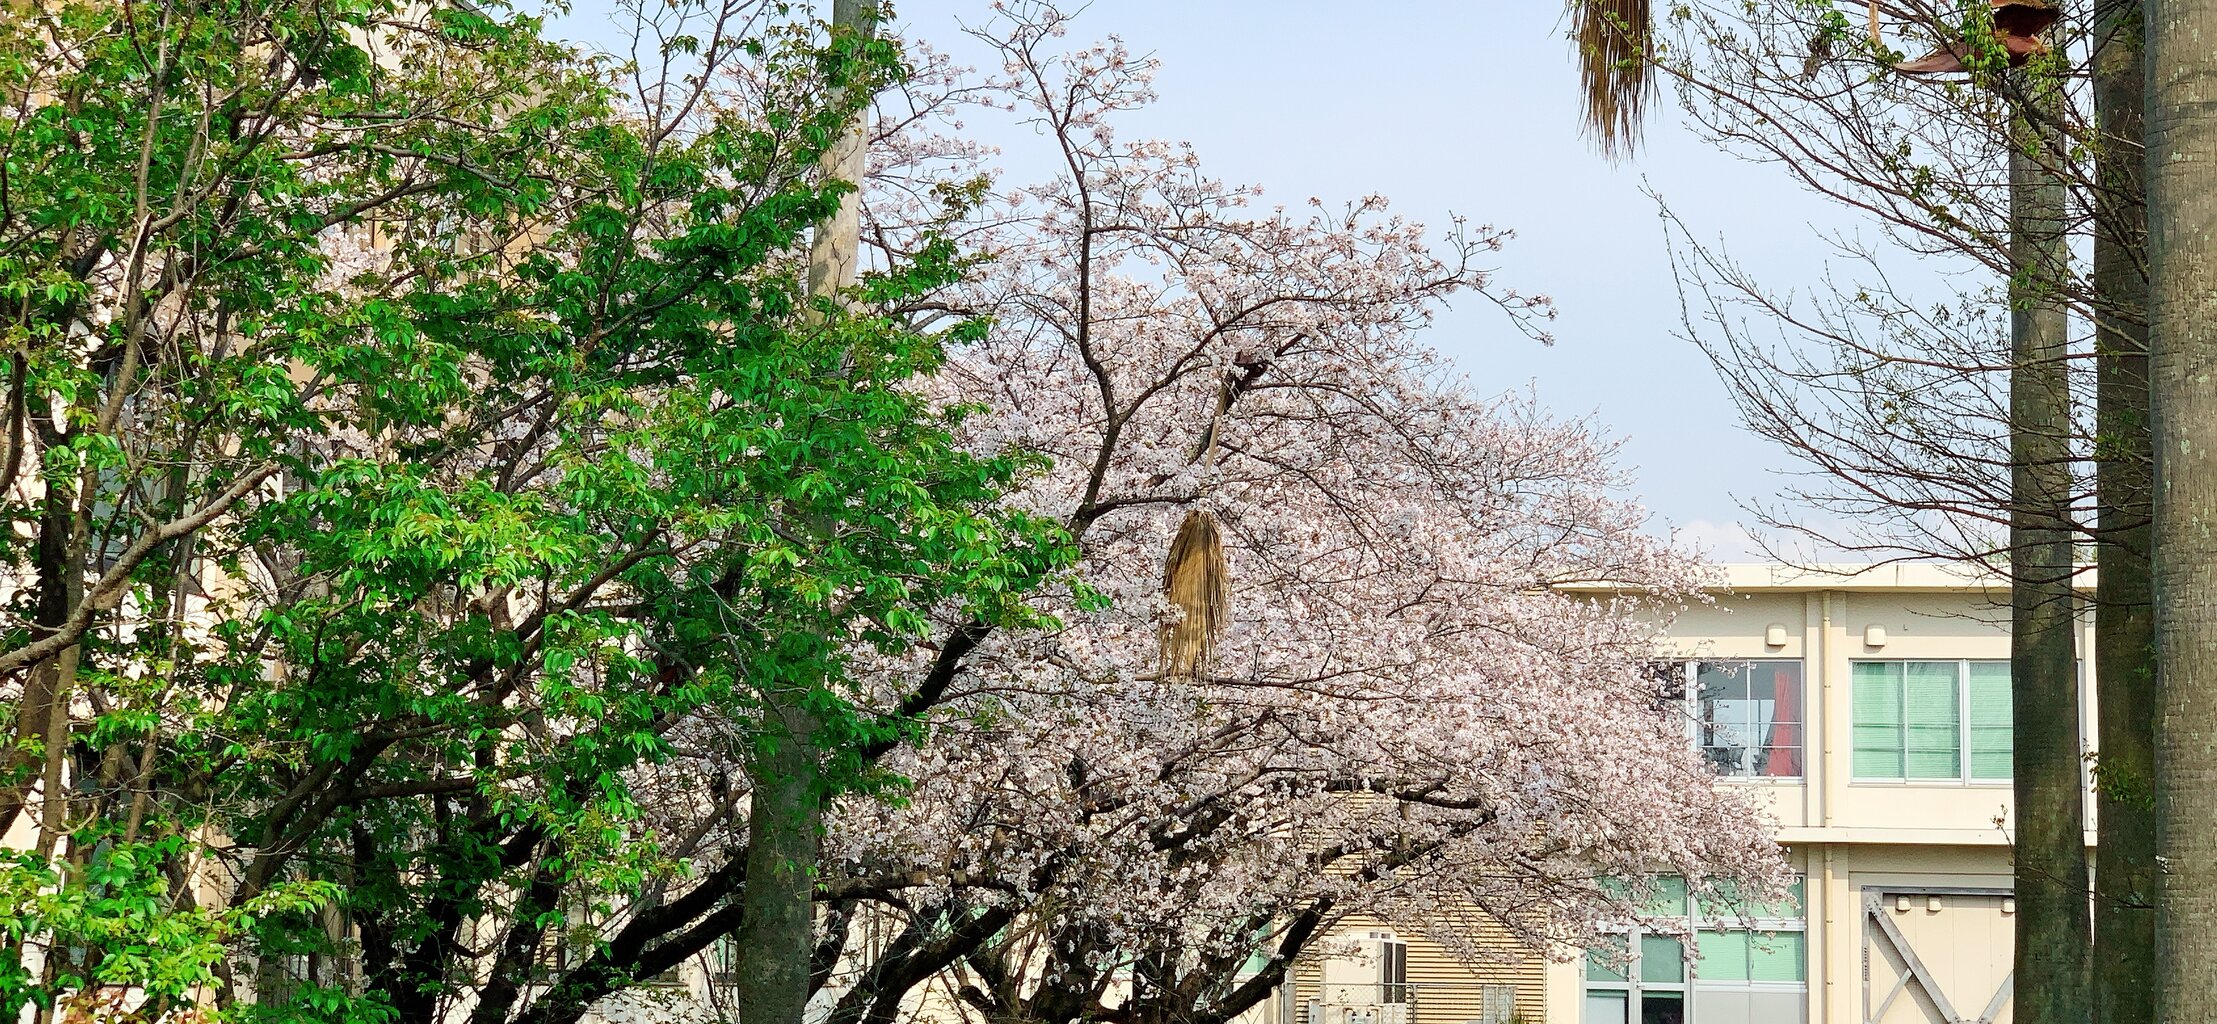 桜が綺麗 かごっまおごじょ 西ひろみ のお気楽日記